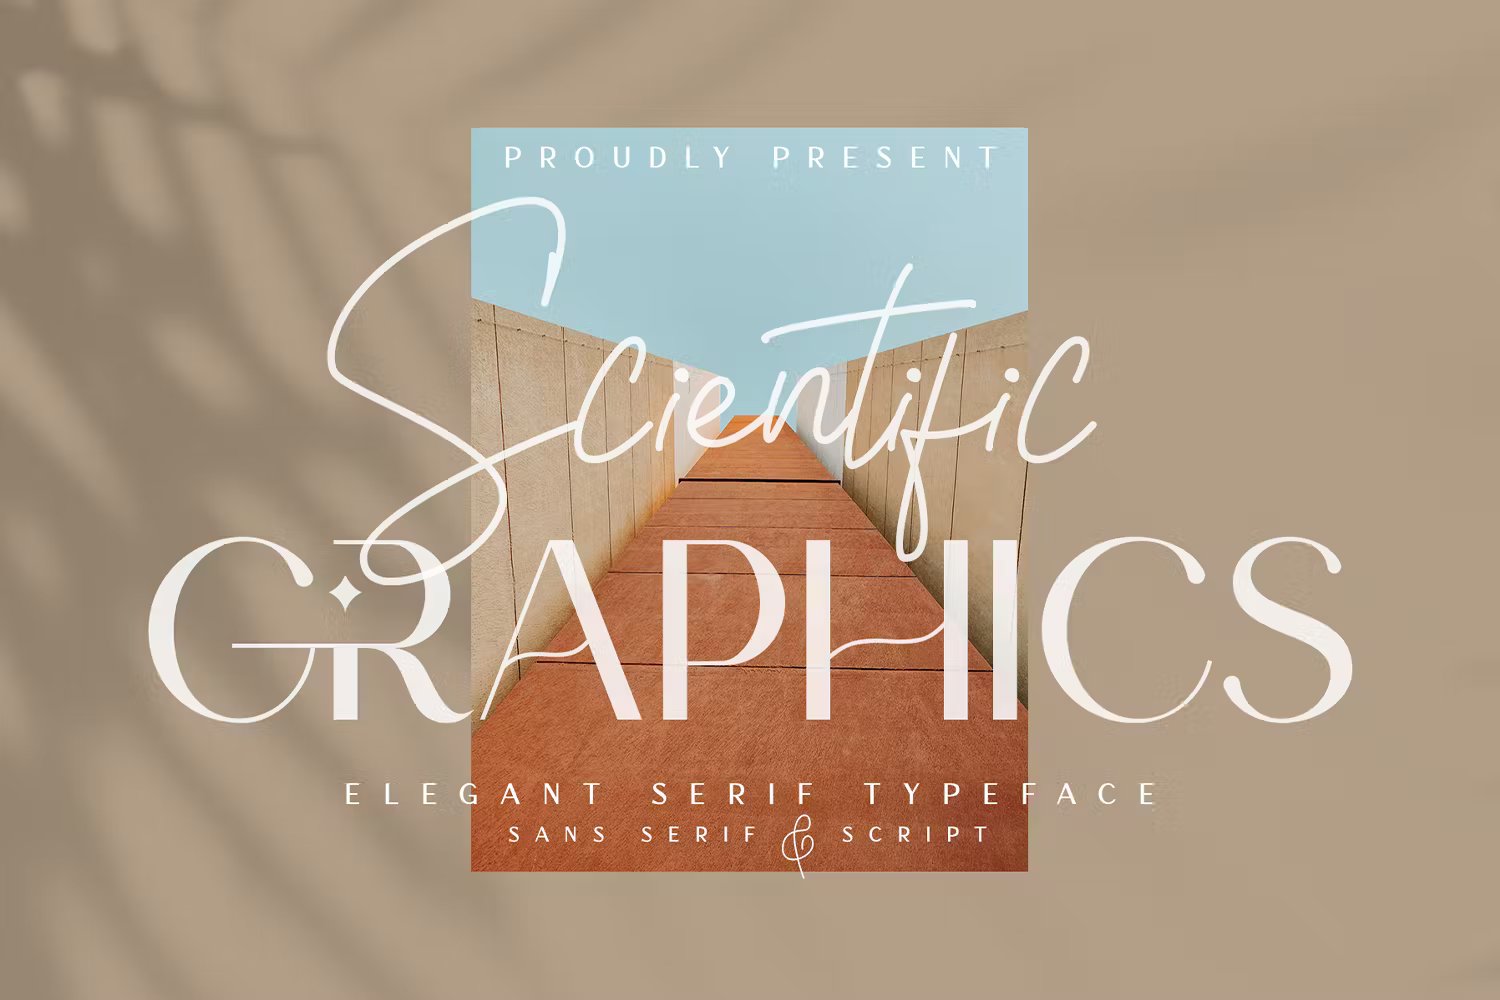 时尚自然独特品牌包装海报设计无衬线和手写双字体 Scientific Graphics 设计素材 第1张